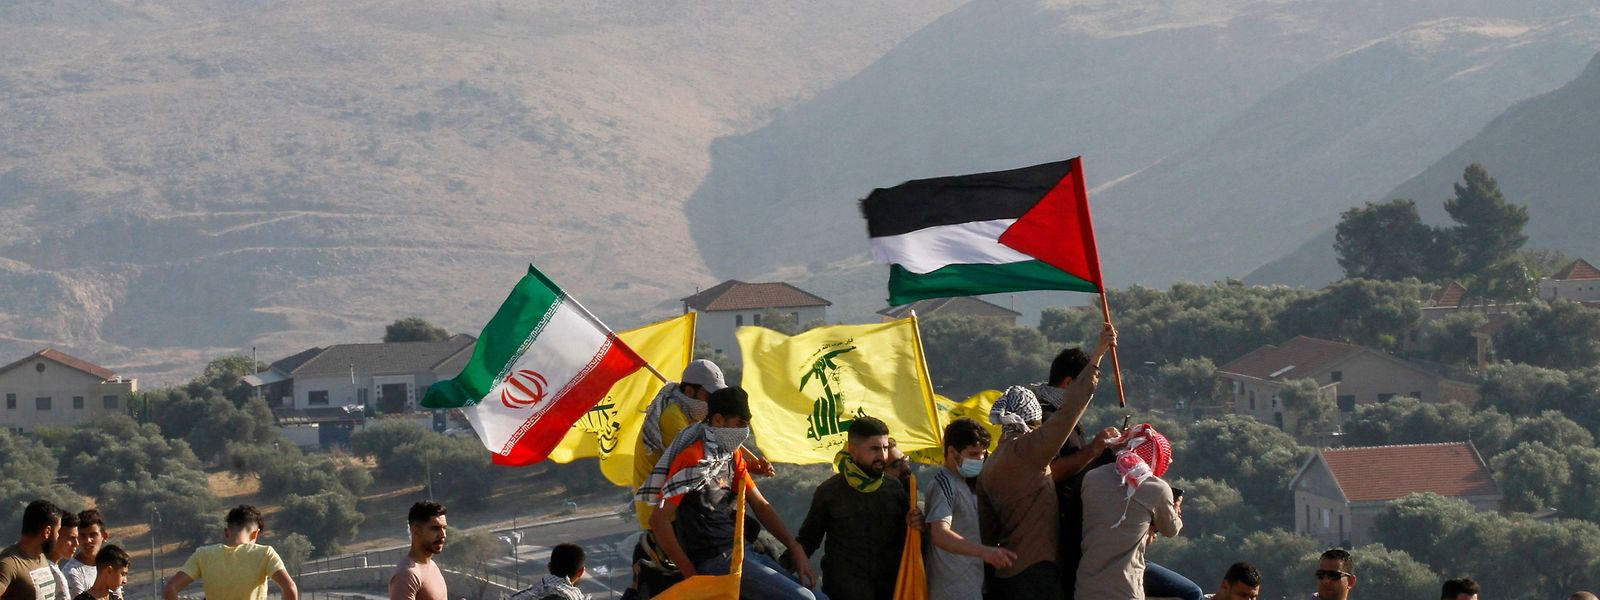 Apoiantes do movimento Hezbollah libanês (bandeira ao centro) com apoiontes do mesmo movimento extremista no Irão e na Palestina, durante uma manifestação anti-Israel. 